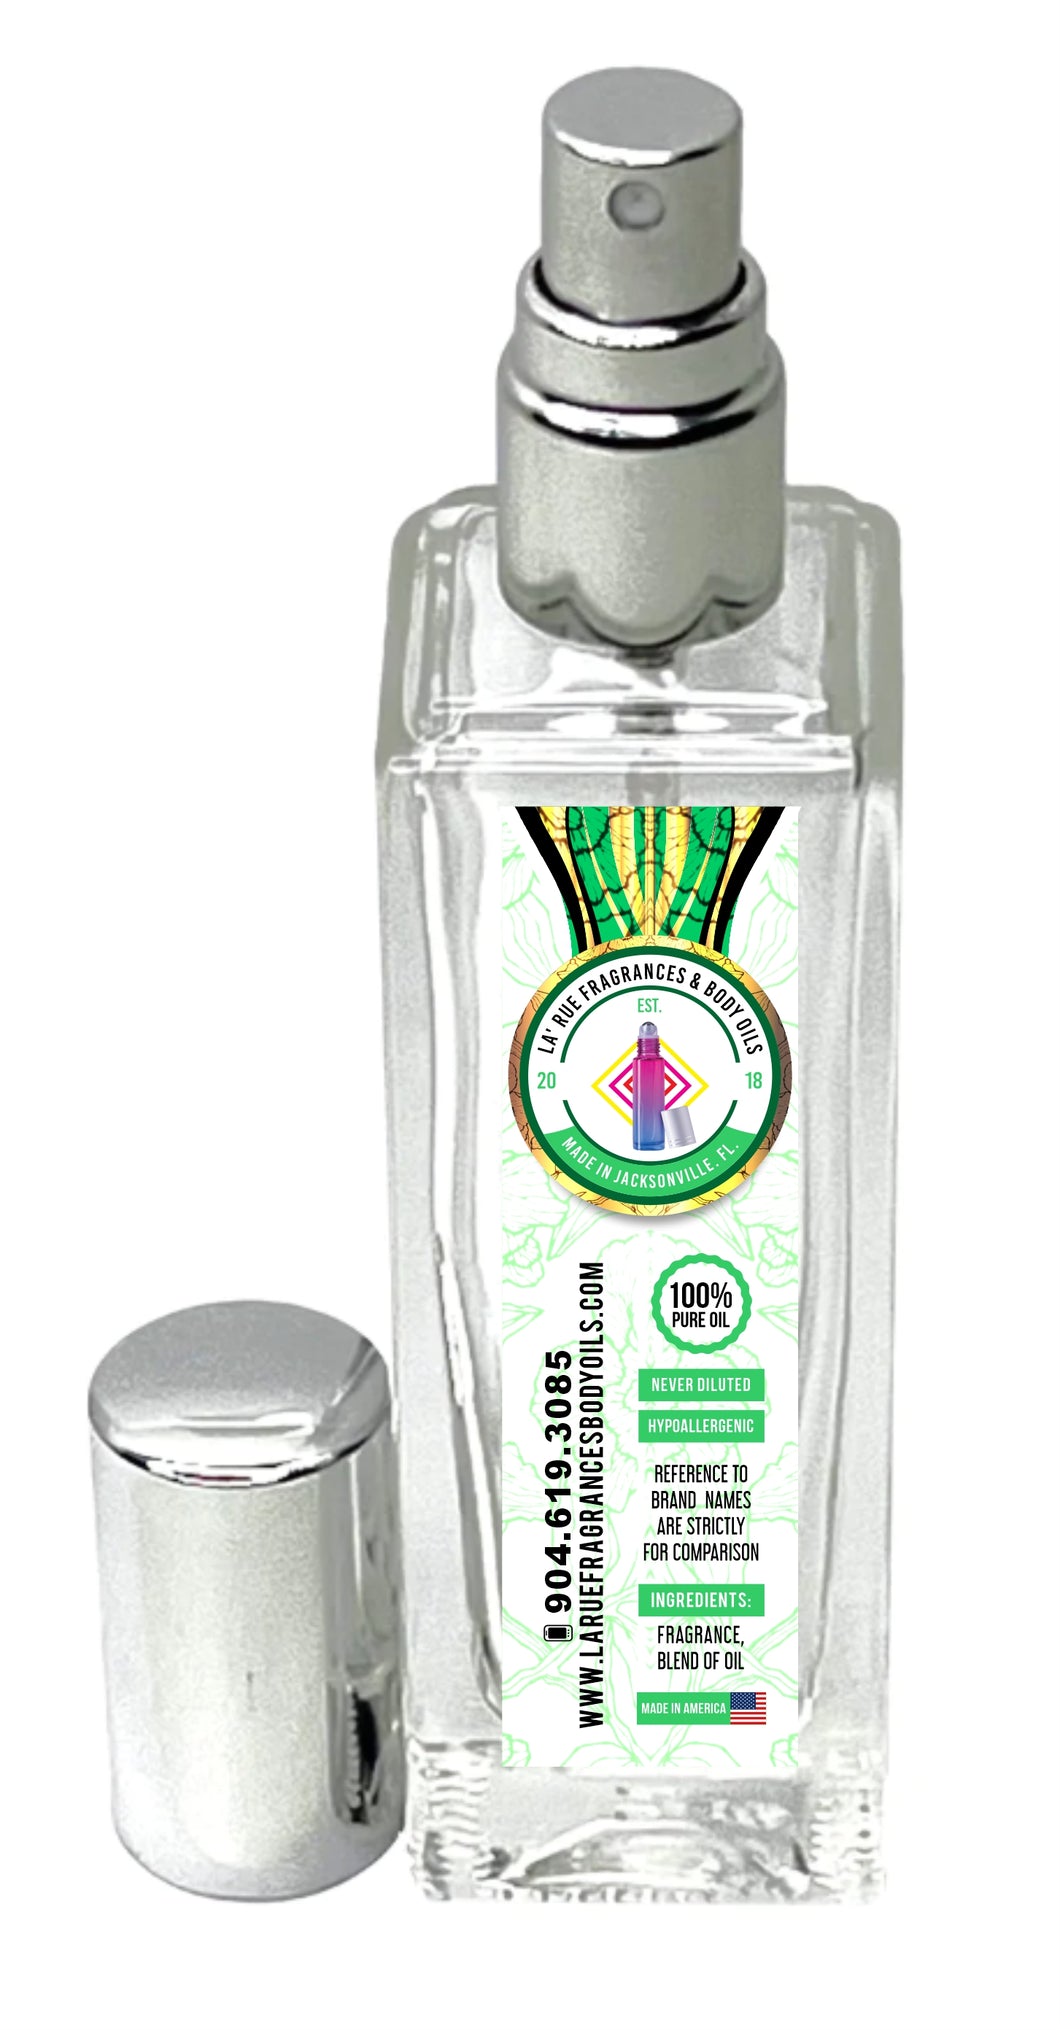 Compare aroma to Invictus Aqua men type 1oz concentrated cologne-perfume spray (Men)